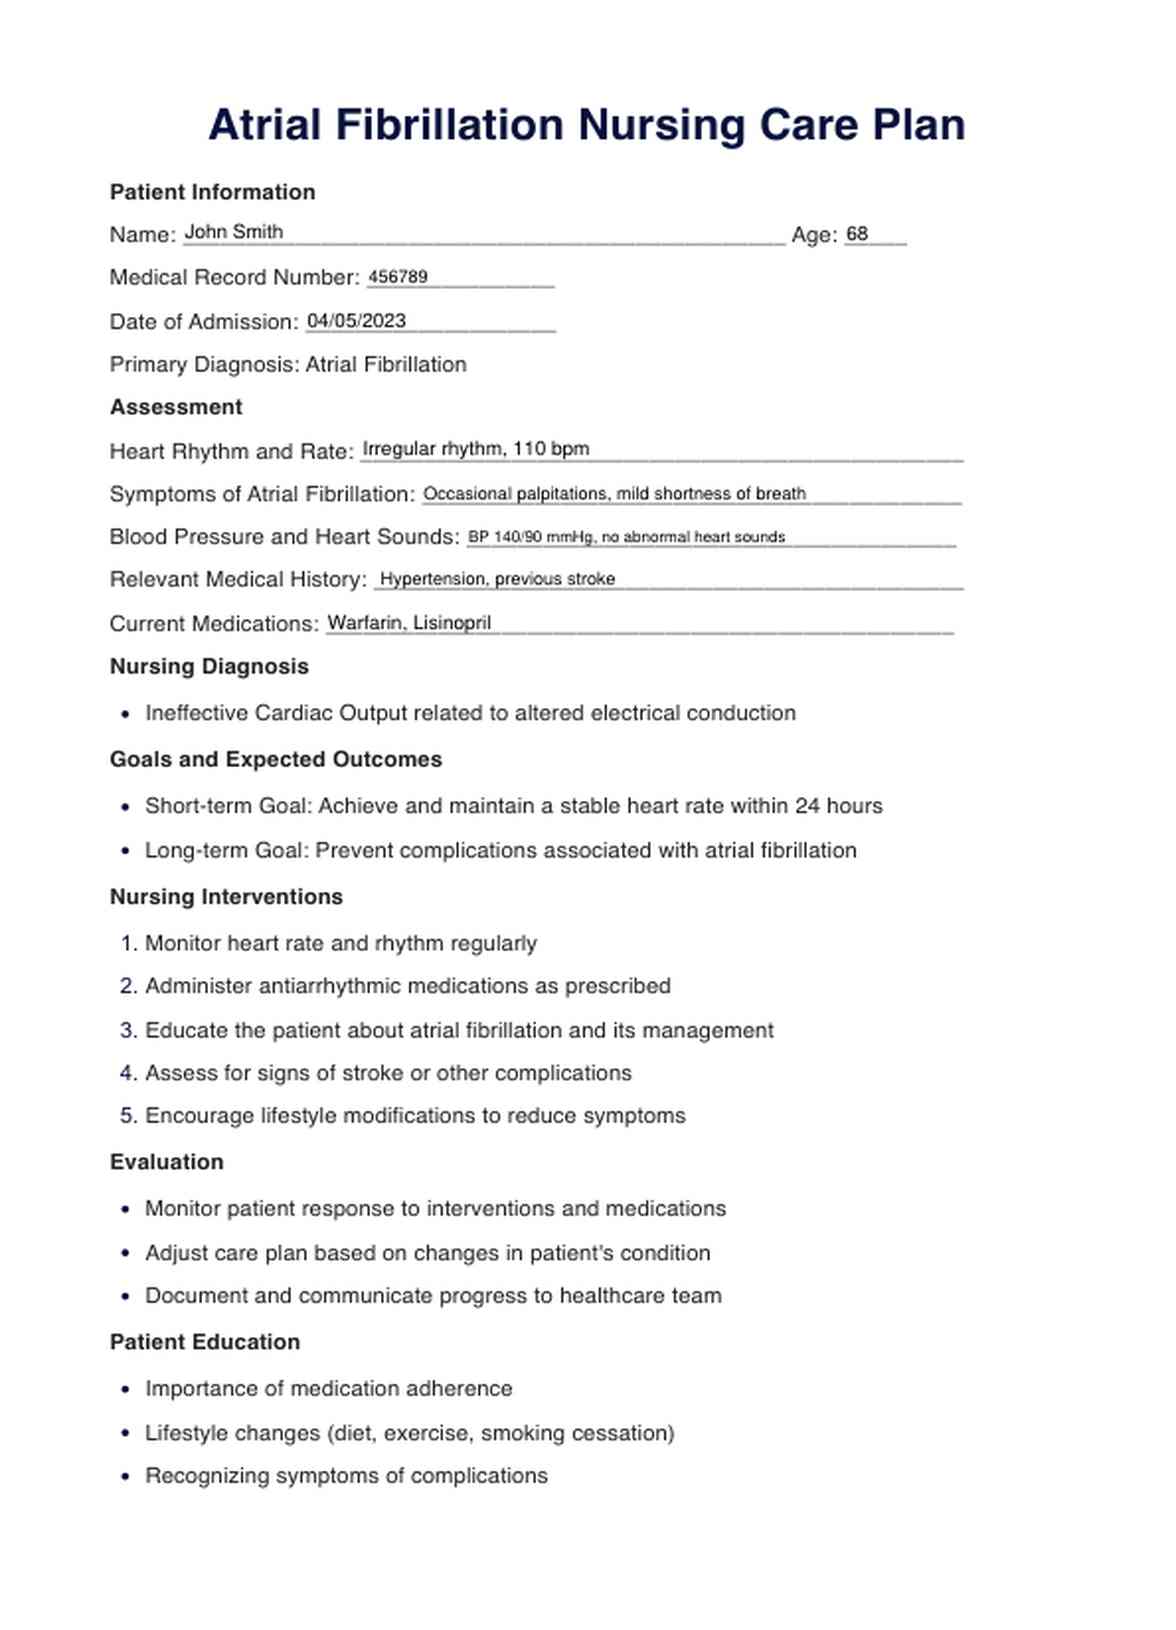 Atrial Fibrillation Nursing Care Plan PDF Example